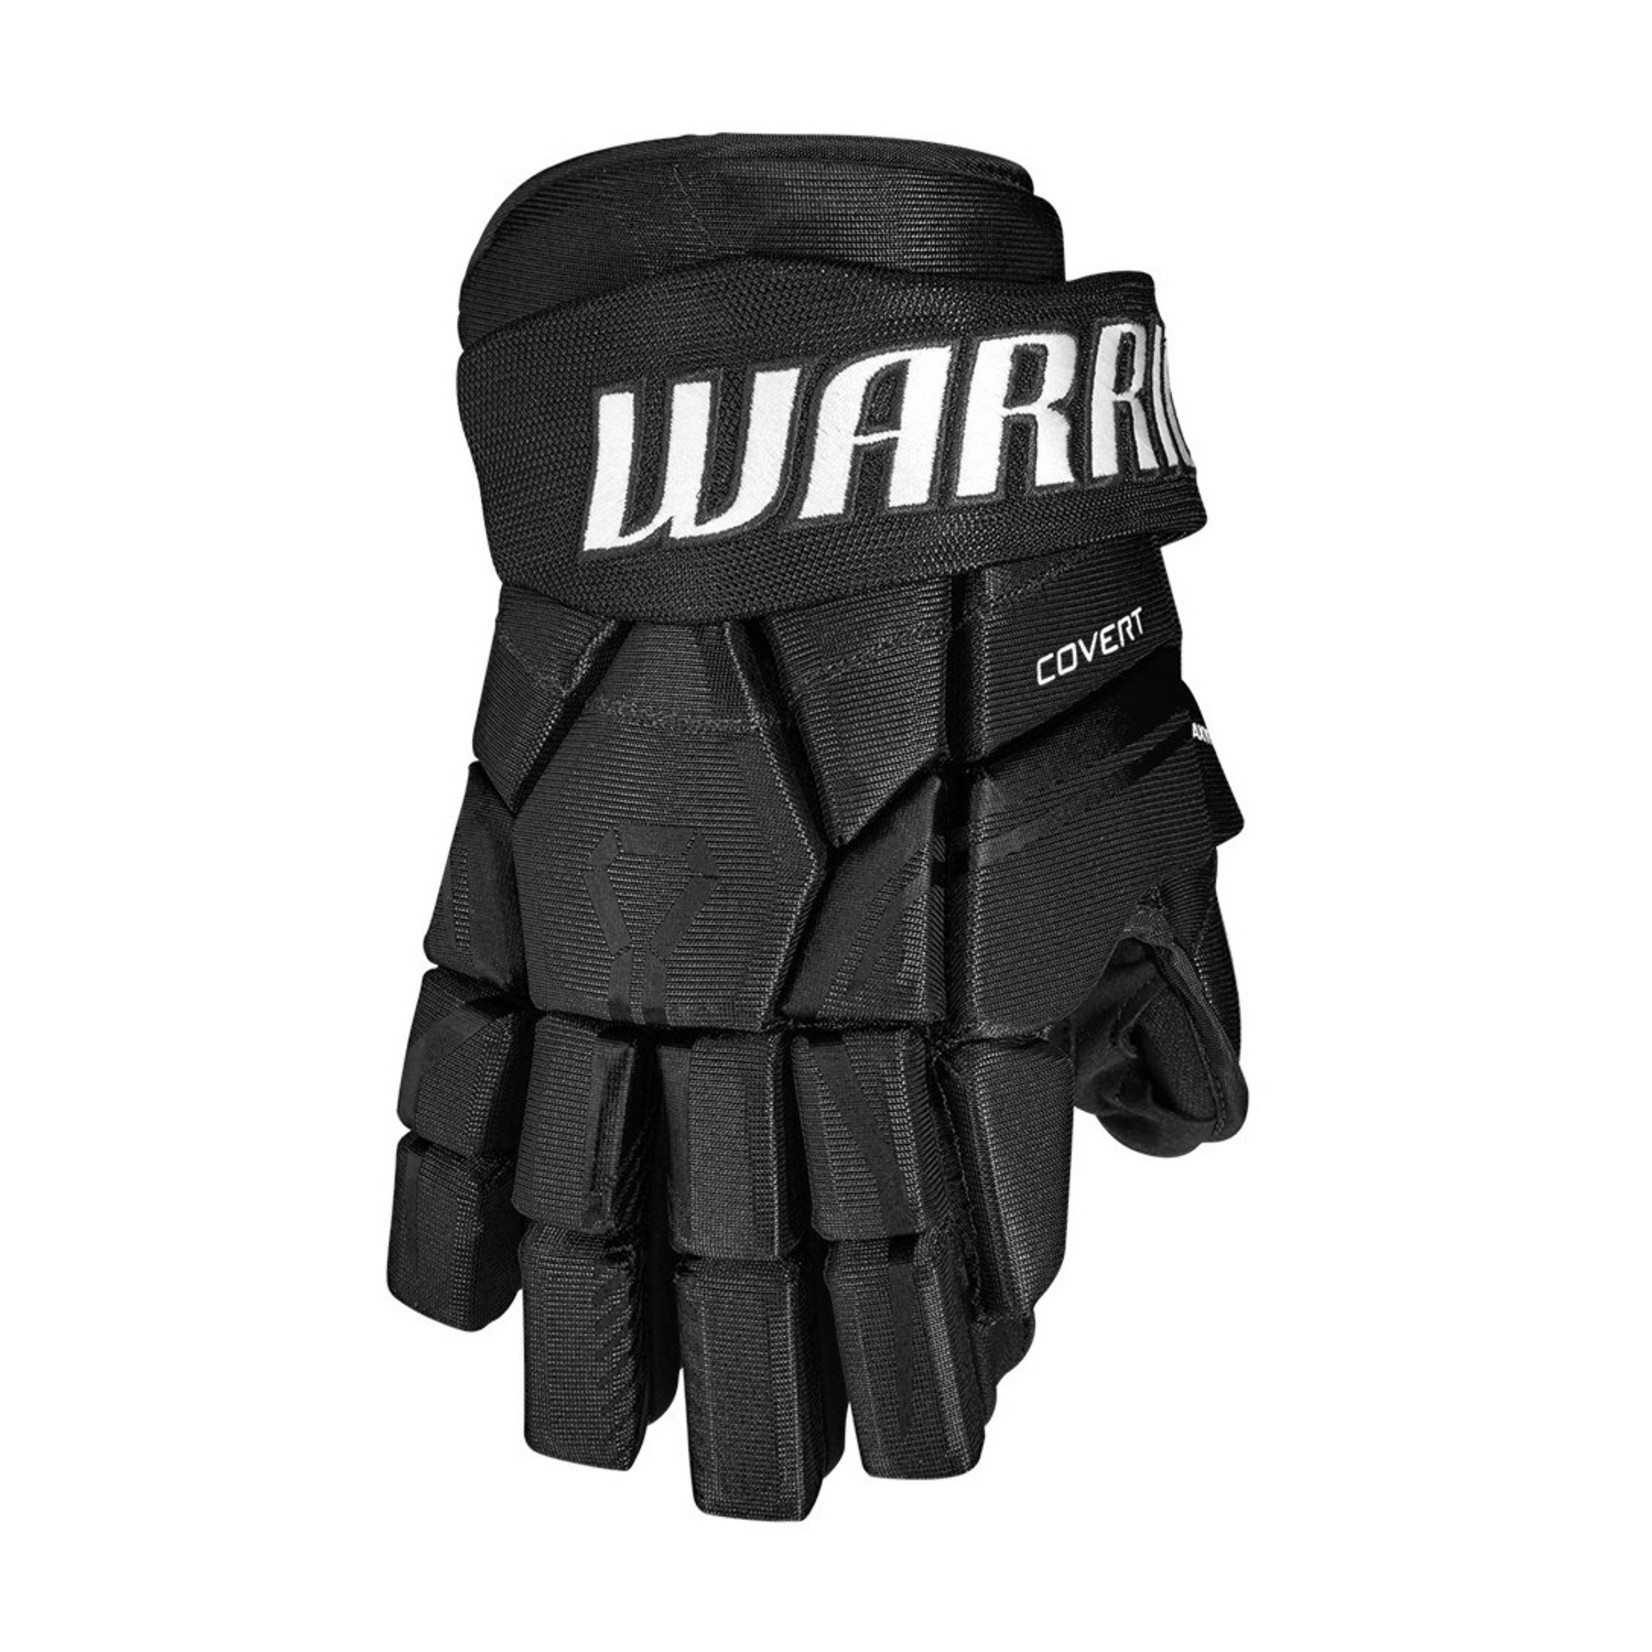 Warrior Warrior Covert QRE 30 Senior Gloves